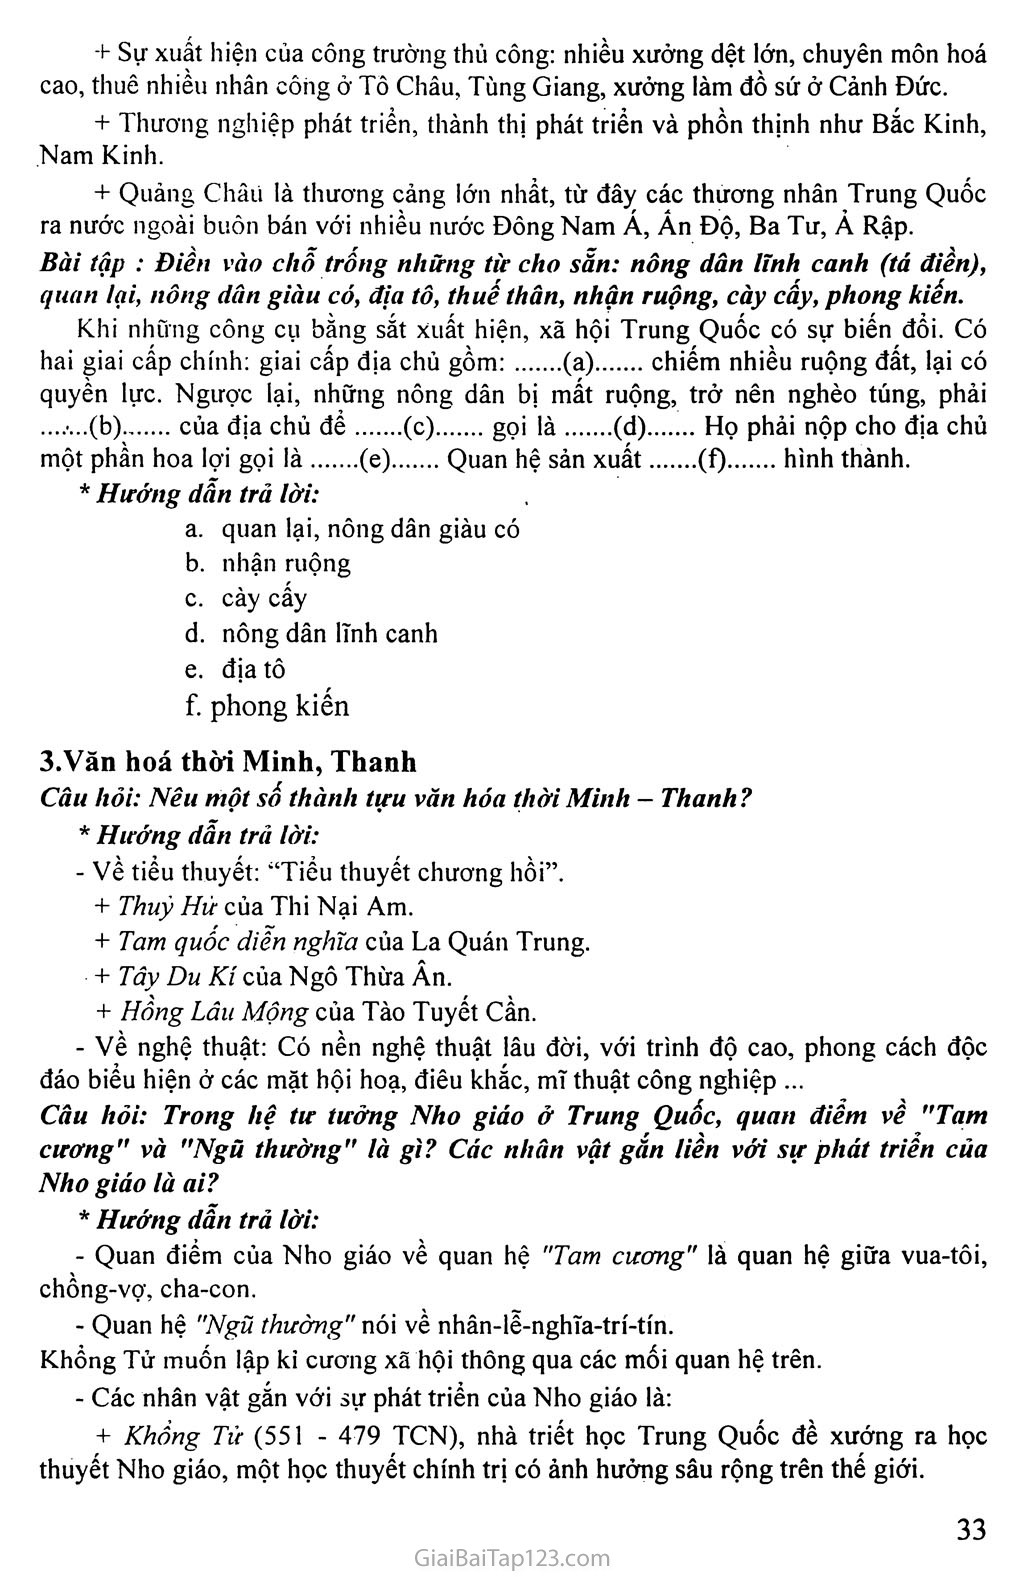 Bài 7: Trung Quốc thời Minh - Thanh trang 2